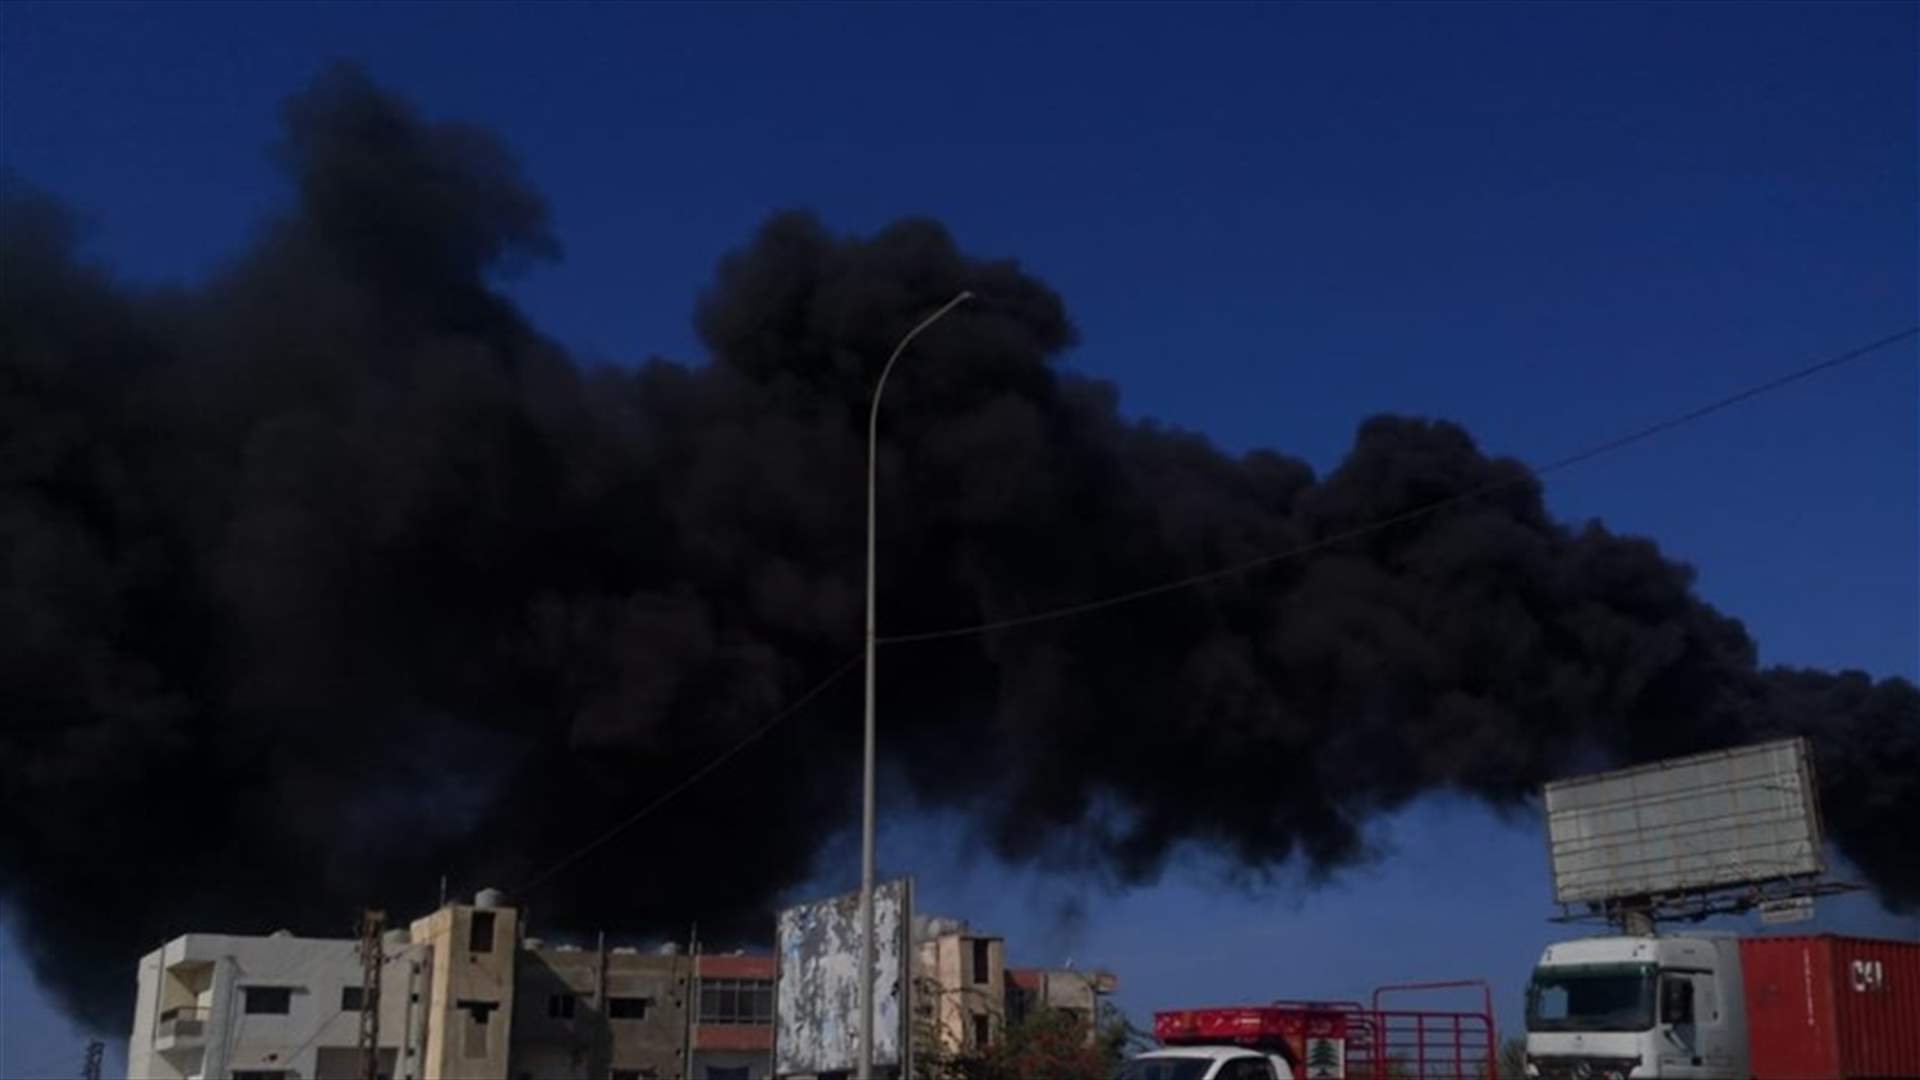 دخان أسود كثيف يتصاعد من معمل الجية (فيديو)